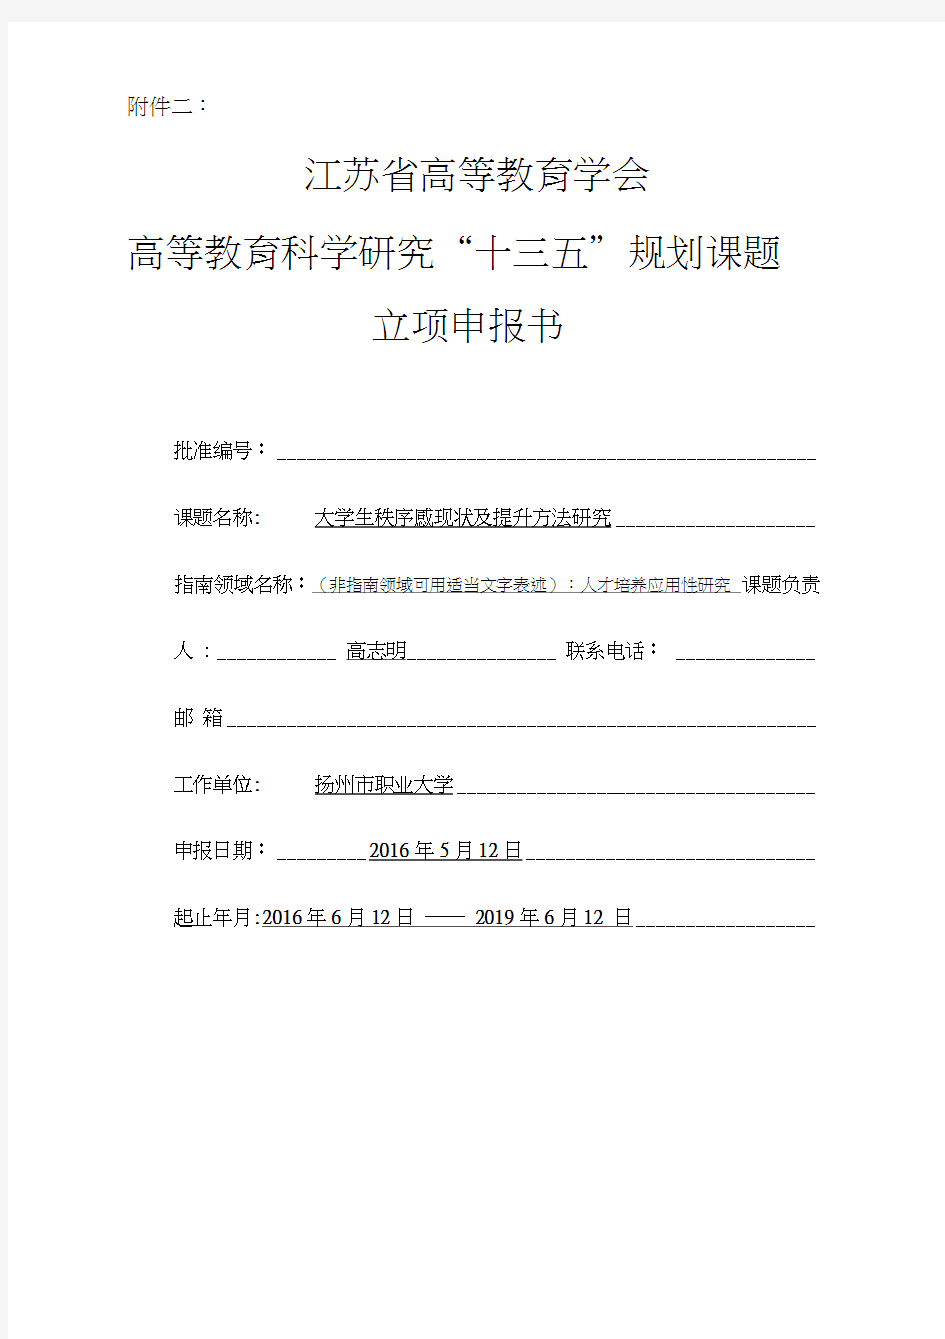 高志明省高校“十三五”规划课题立项申报书